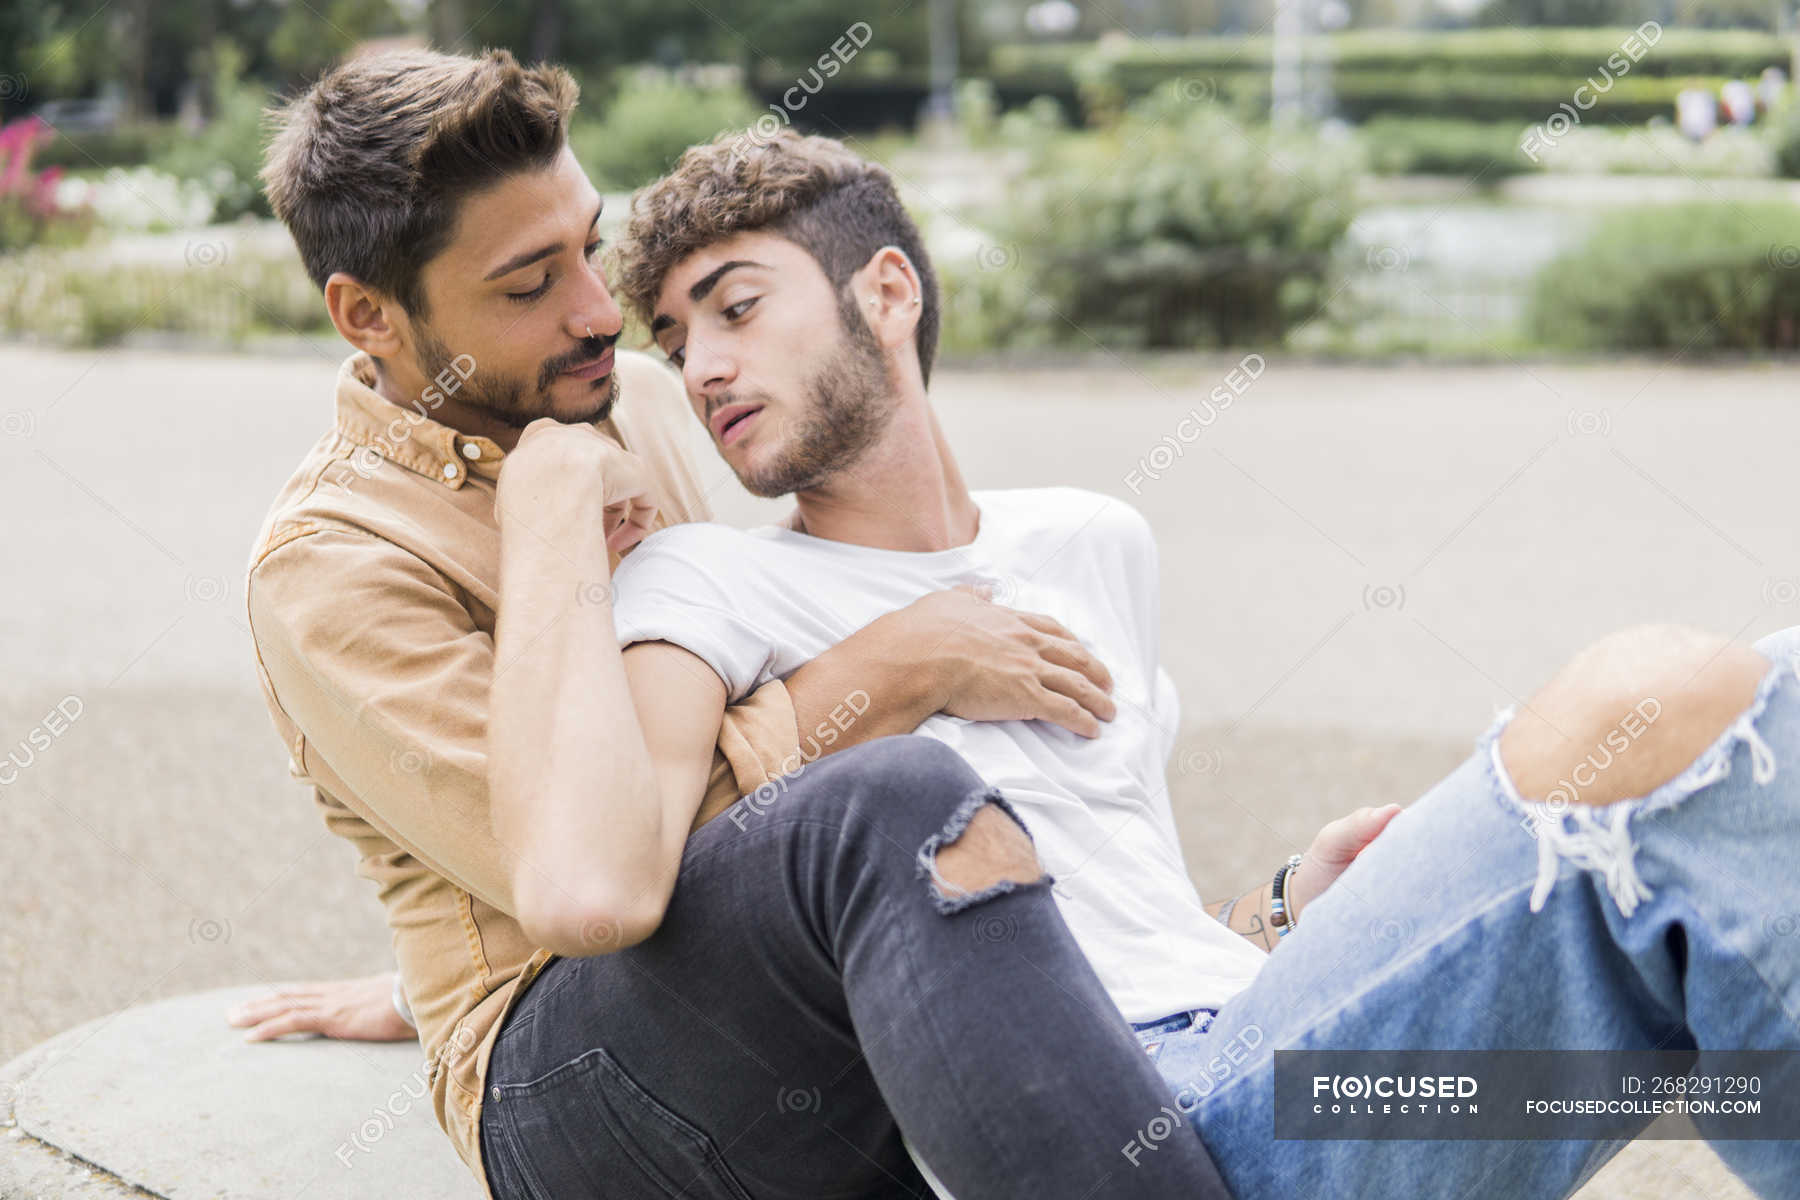 gay dating i lørenskog